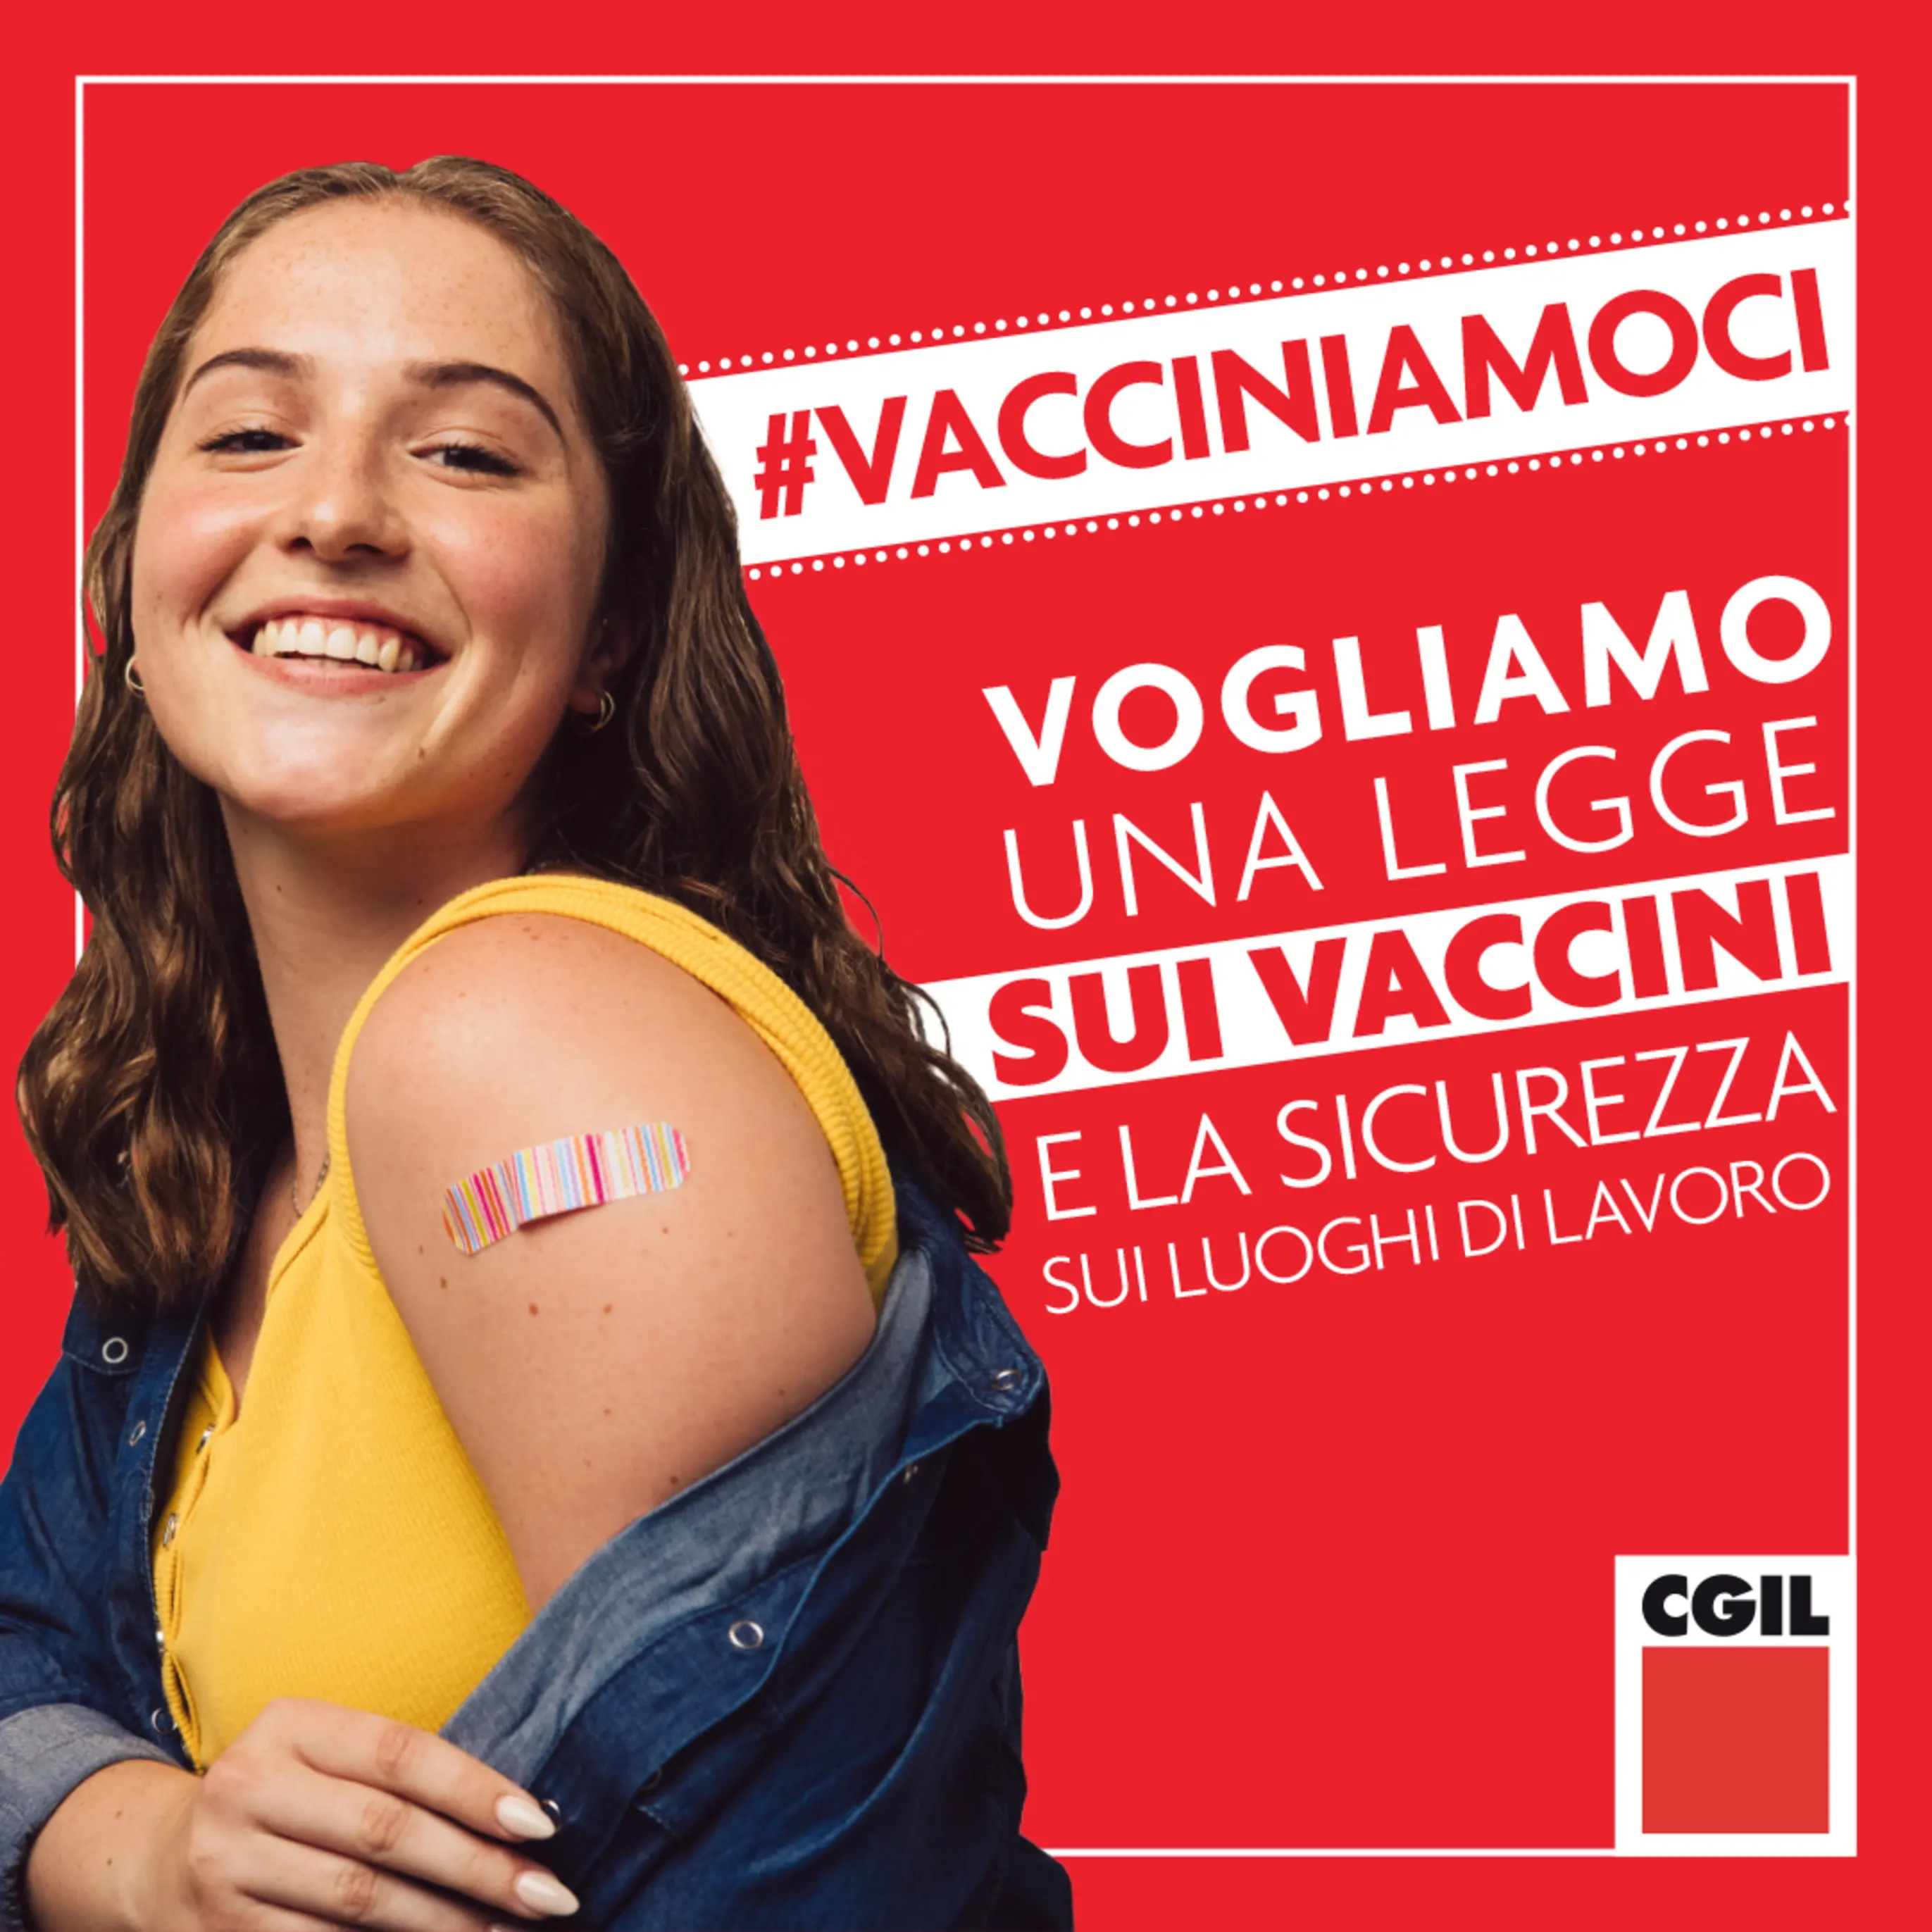 La Cgil scende in campo: «Vacciniamoci. Per noi stessi, per gli altri»